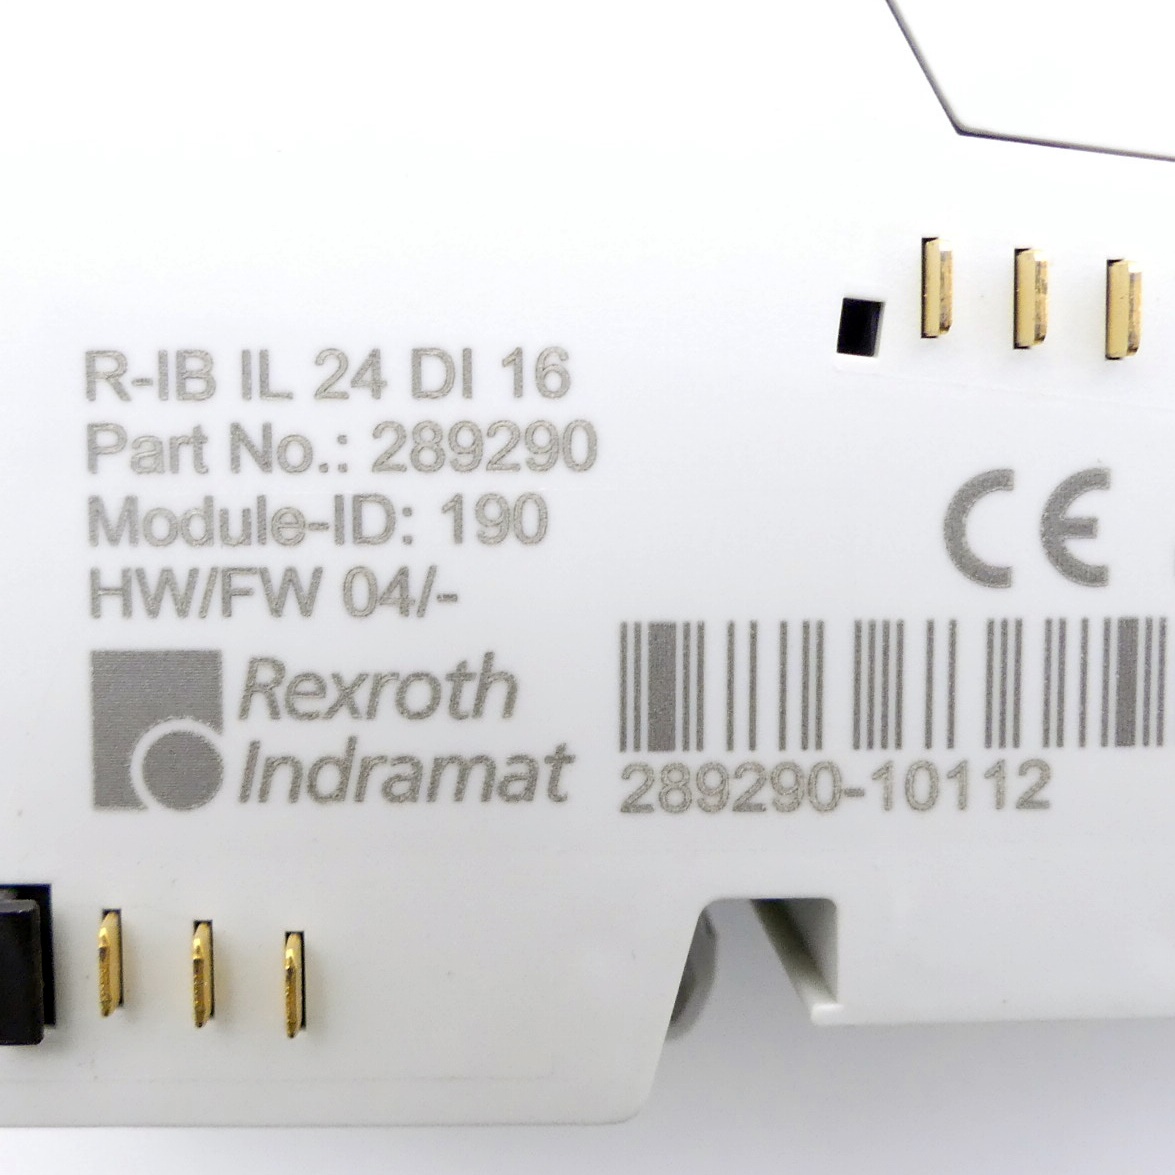 Digital input terminal R-IB IL 24 DI 16 